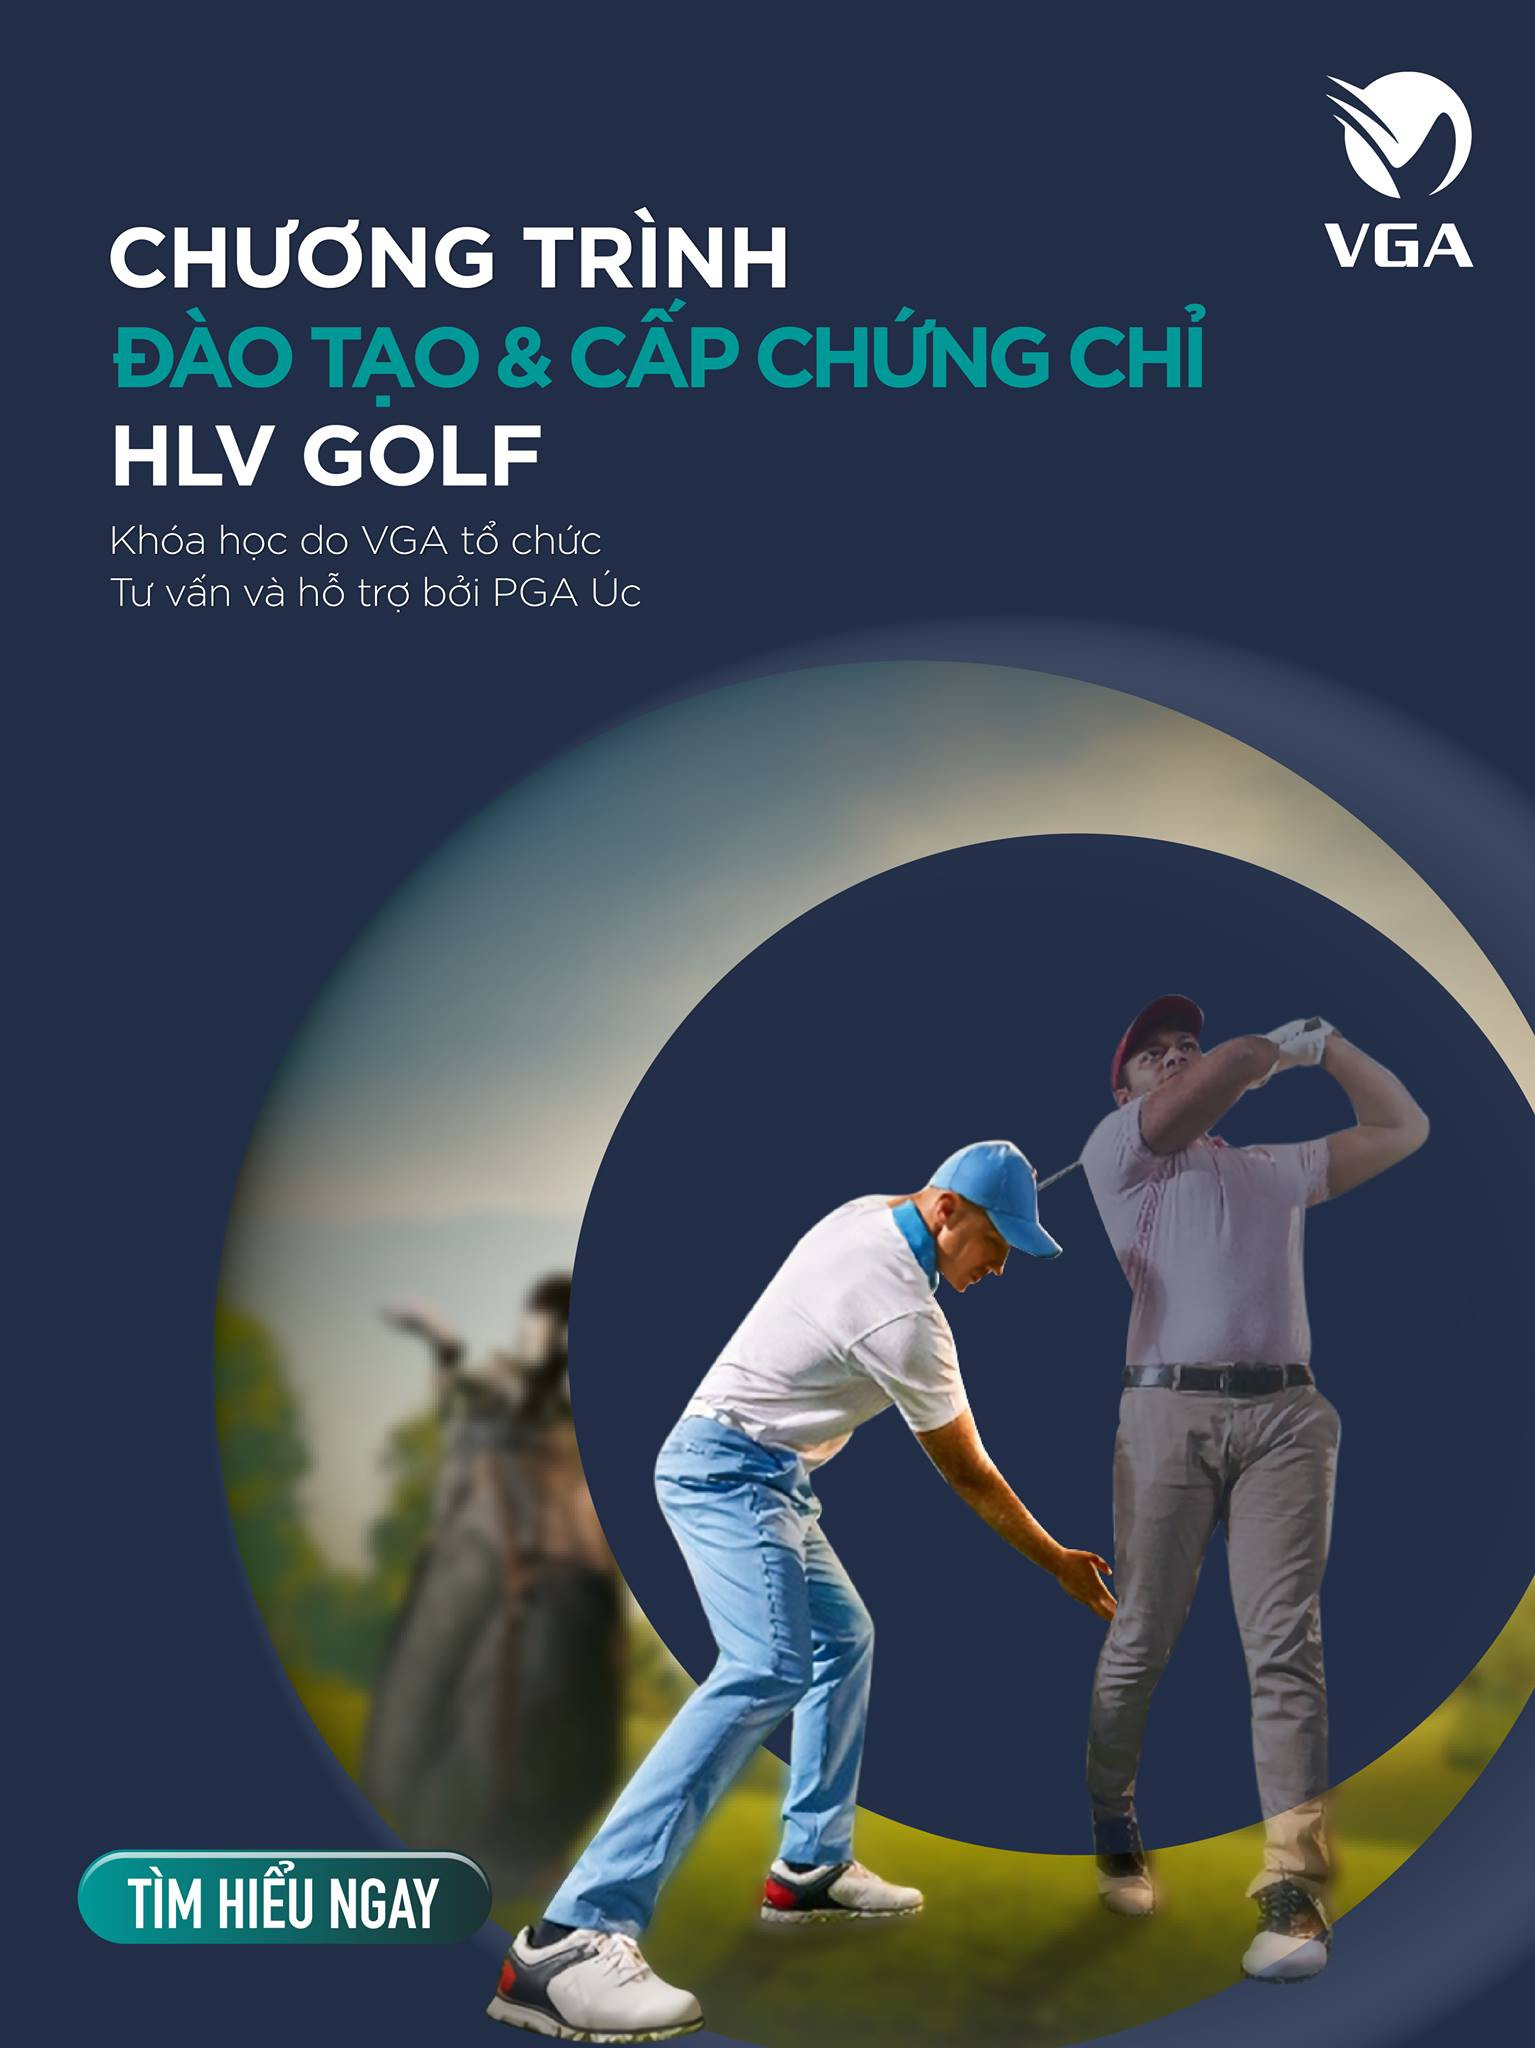 Hiệp hội golf Việt Nam mở chương trình đào tạo huấn luyện viên bằng giáo trình của PGA Úc - Ảnh 1.